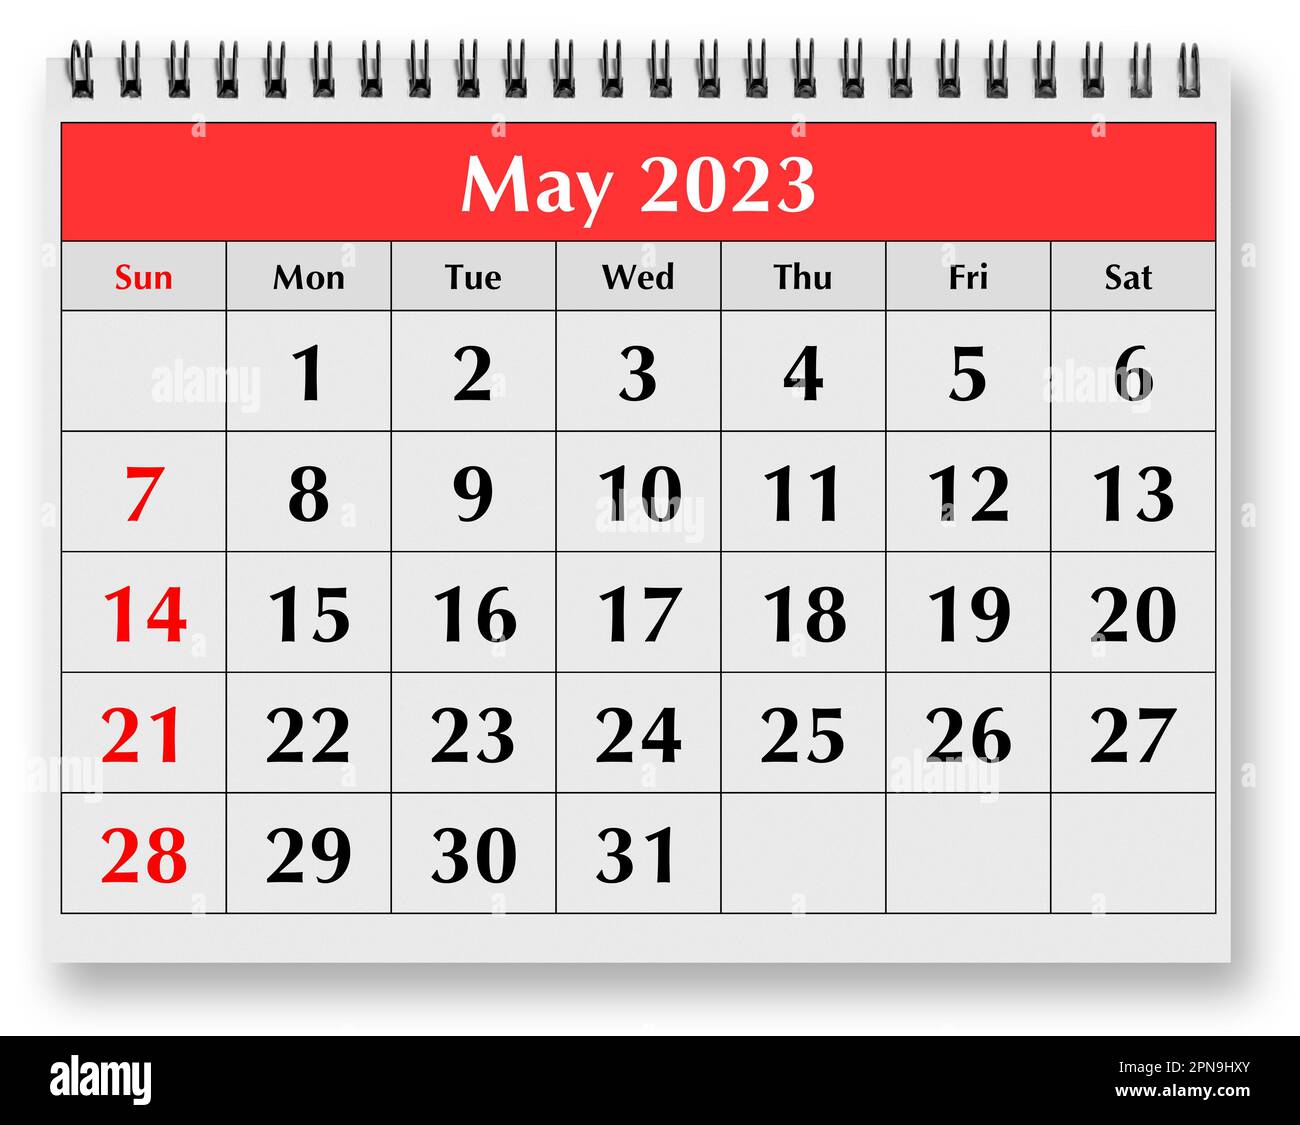 Calendario De Mayo 2023 Mayo 2023 Imágenes recortadas de stock - Alamy